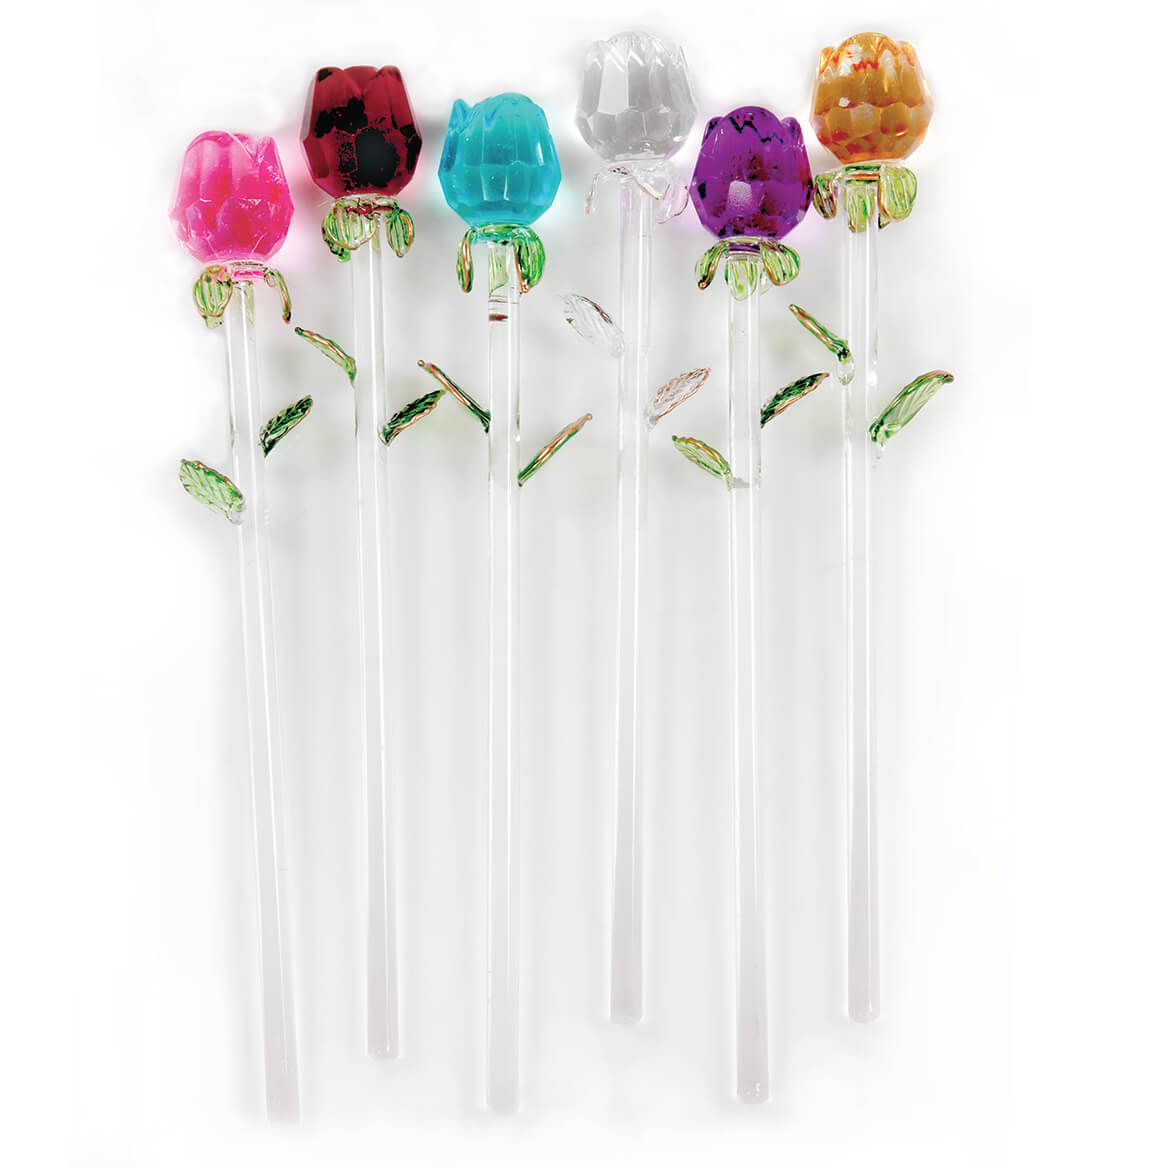 Exquisite Glass Roses S/6 + '-' + 369891